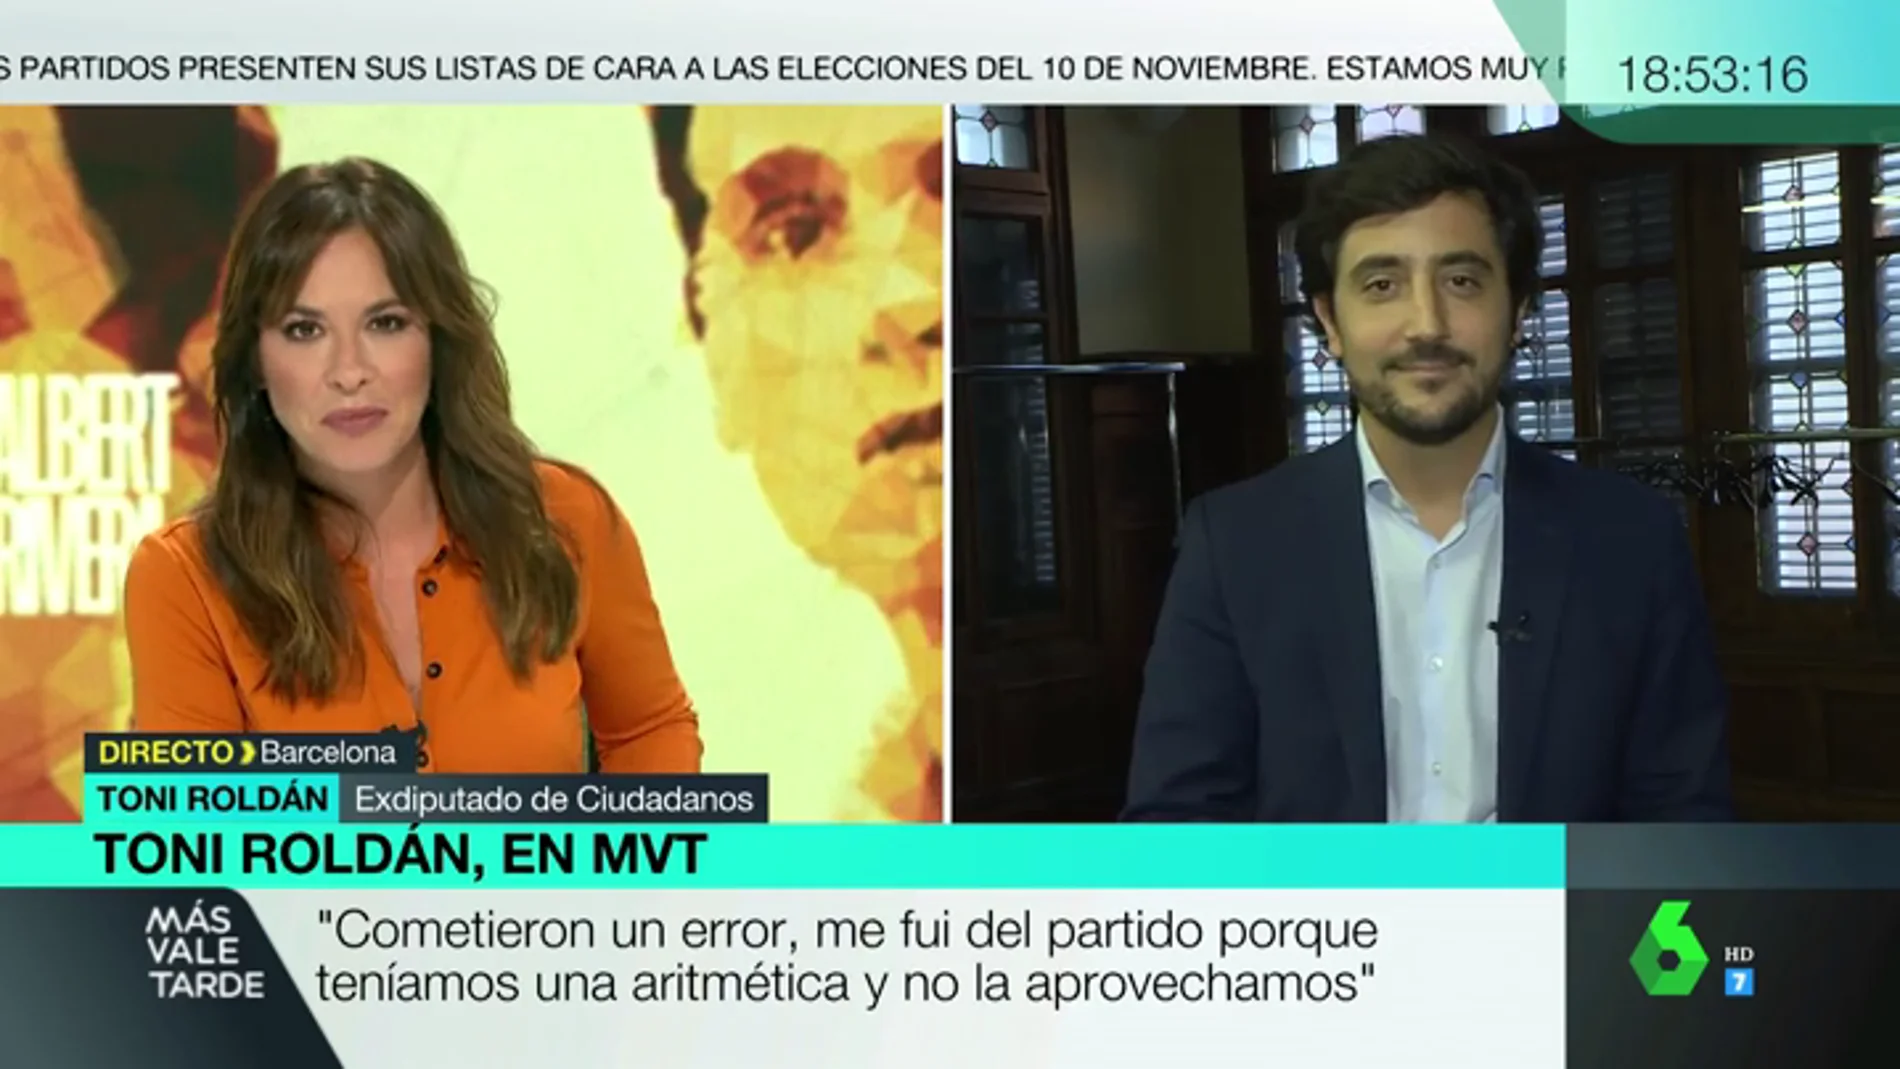 Toni Roldán, tras el desbloqueo de Rivera al PSOE: "No voy a volver. Les deseo mucha suerte al igual que a los demás partidos"